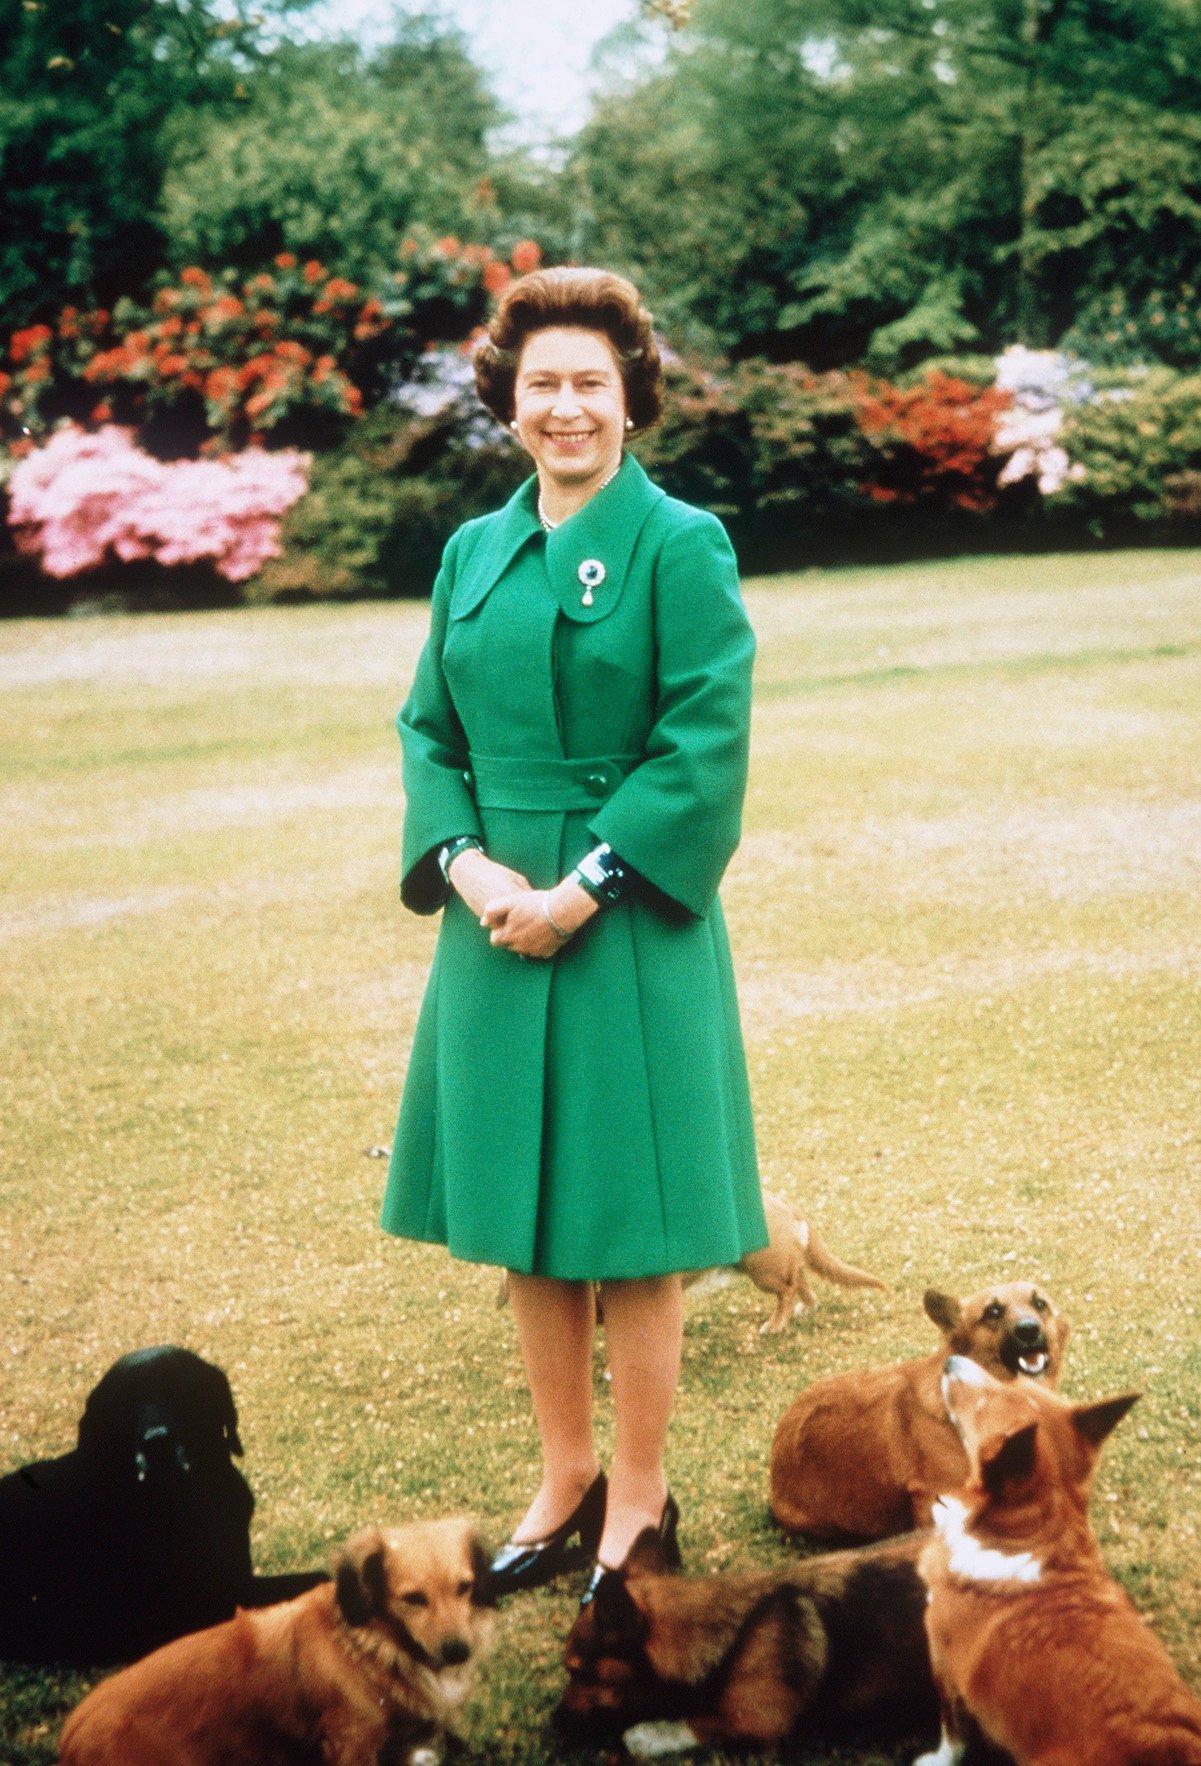 Queen Elizabeth II at Sandringham with her corgis